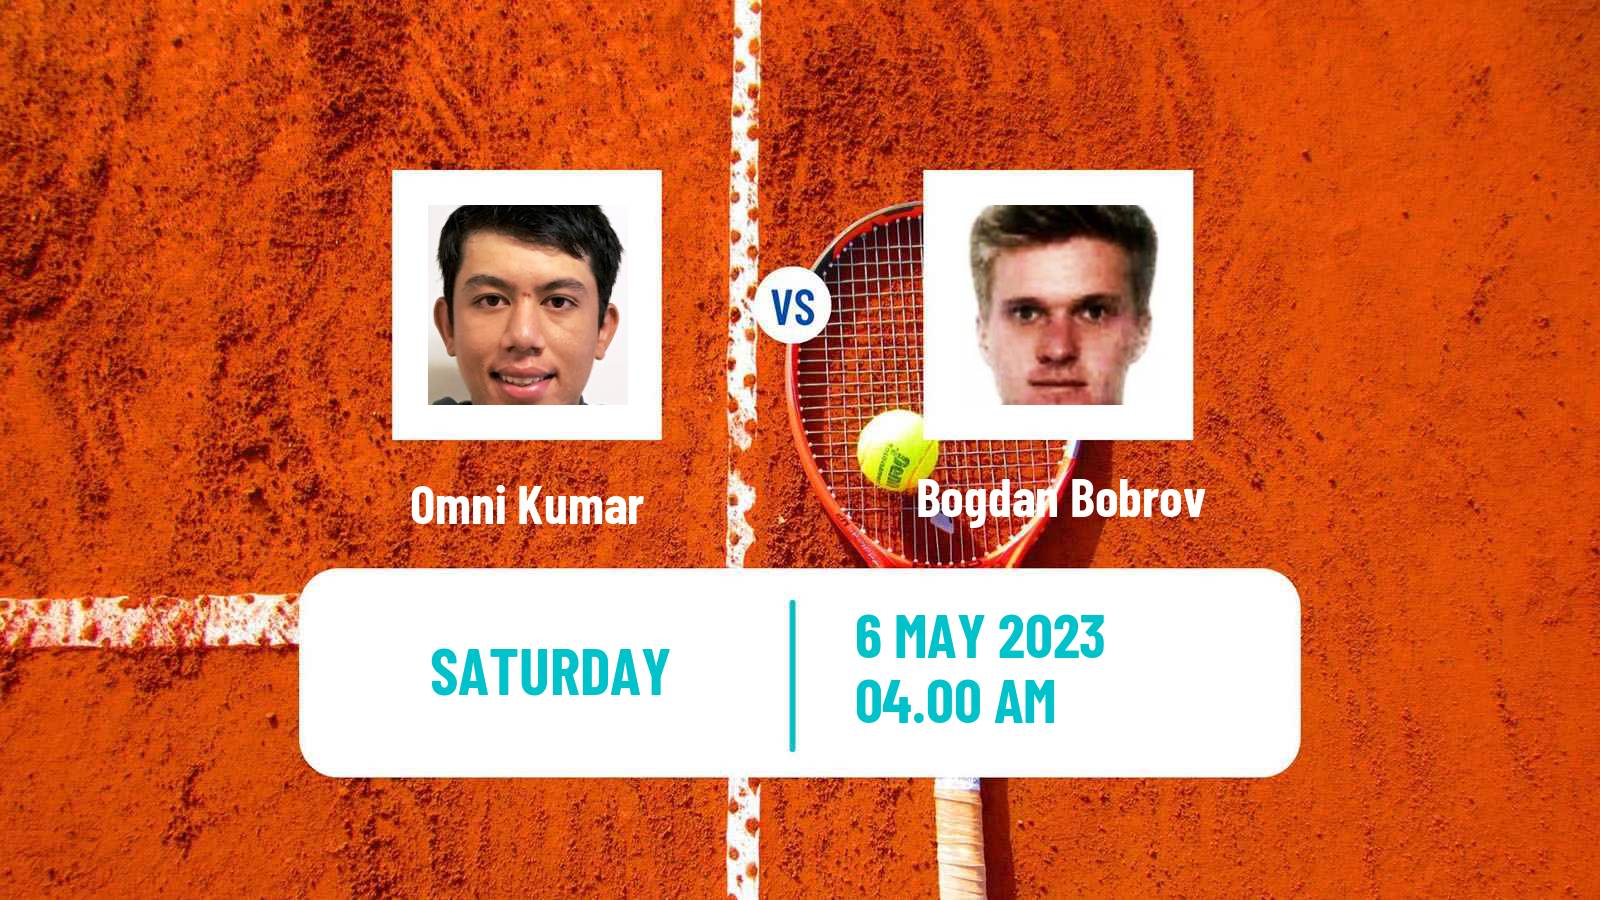 Tennis ITF Tournaments Omni Kumar - Bogdan Bobrov